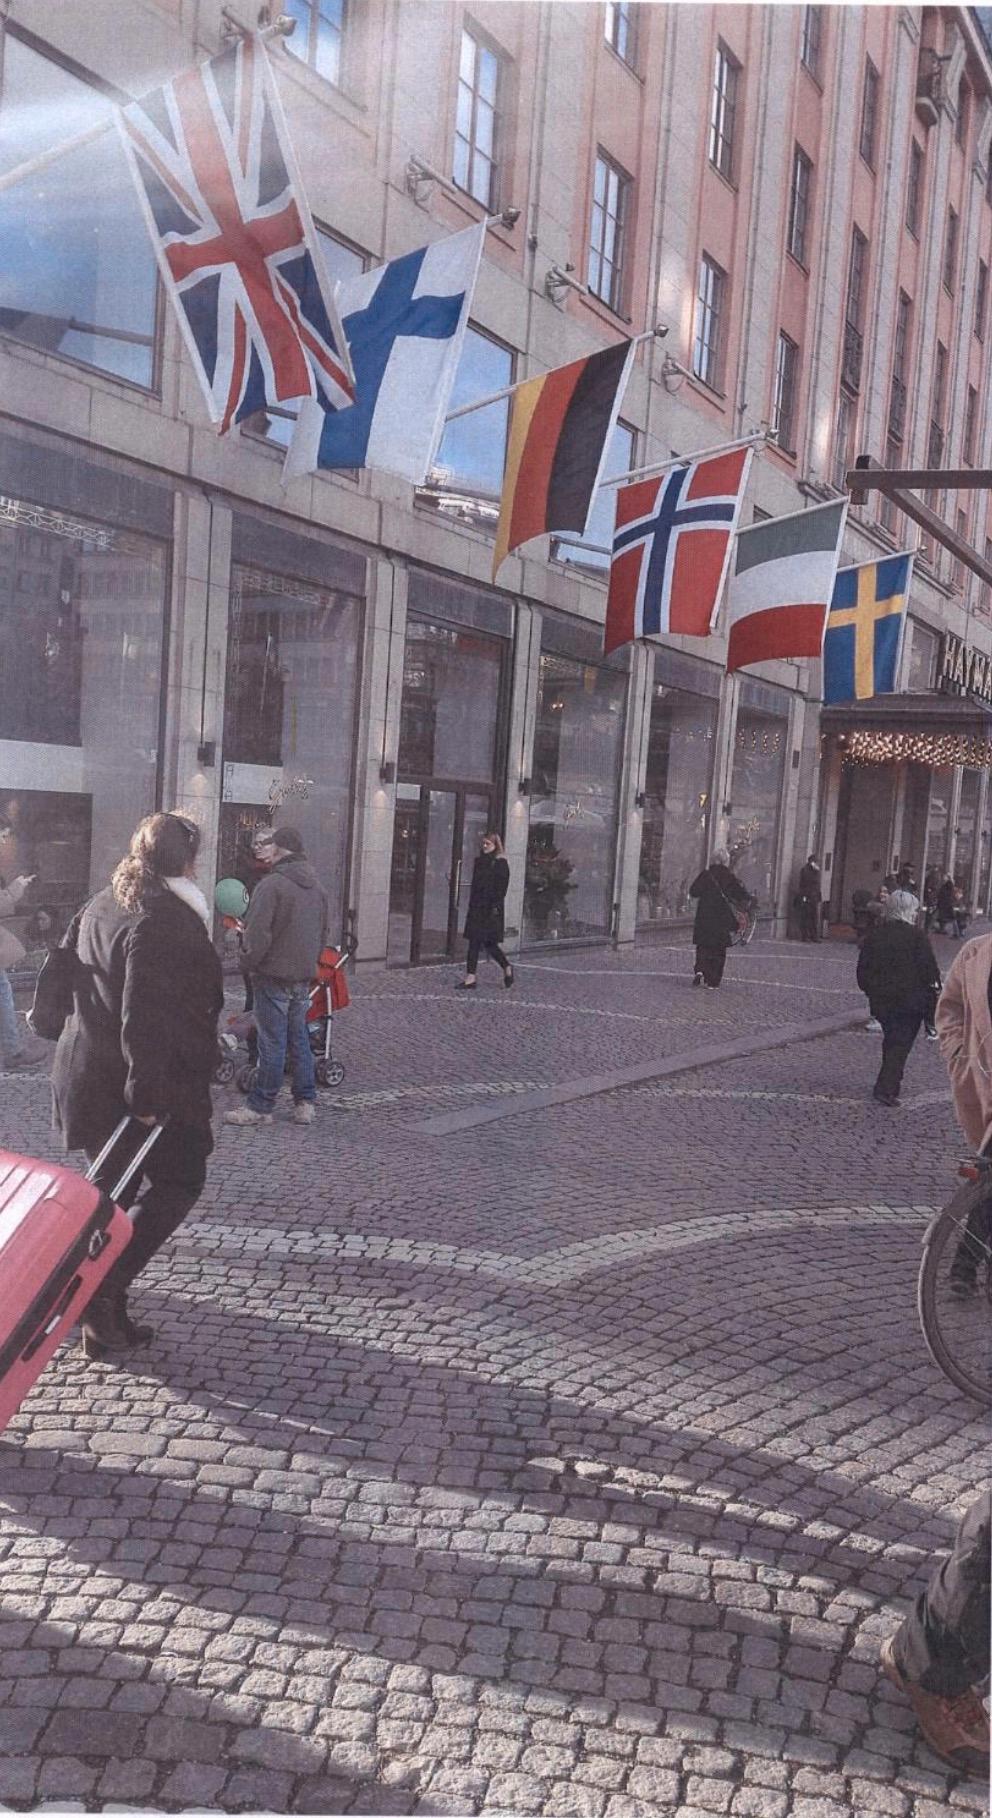 Akilovs bild från Hötorget, Stockholm.